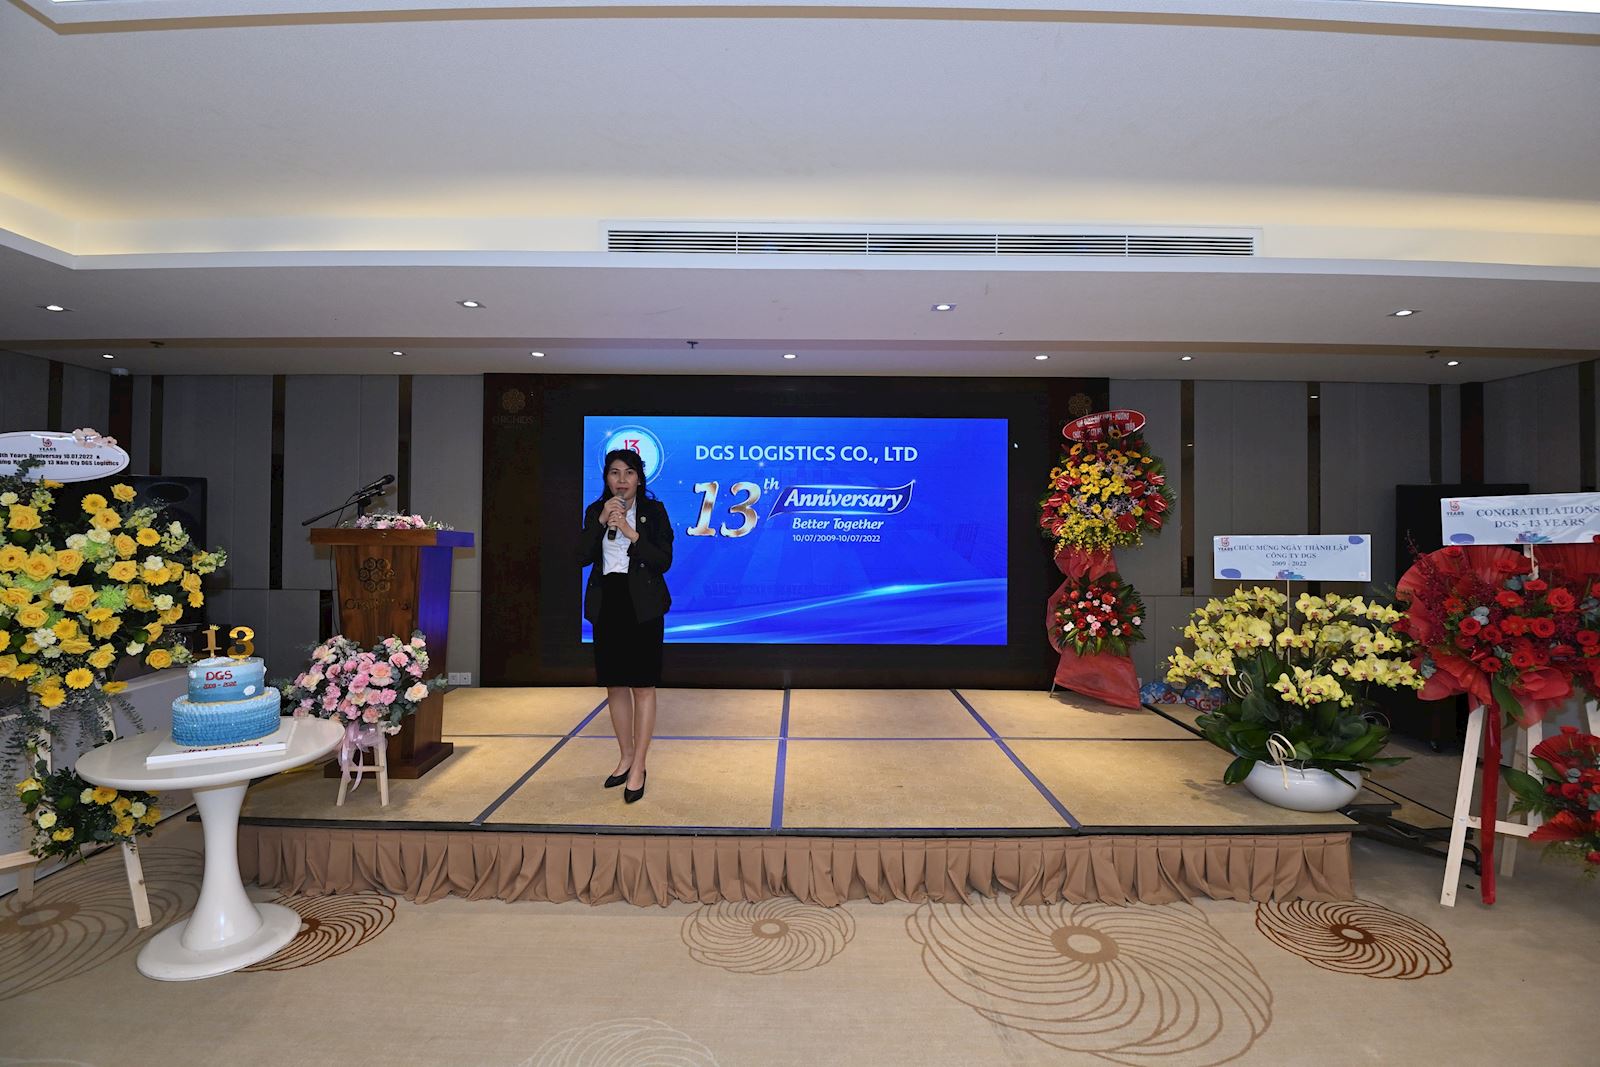 Bà Trần Thị Tú Trâm – Tổng giám đốc DGS phát biểu khai mạc chương trình